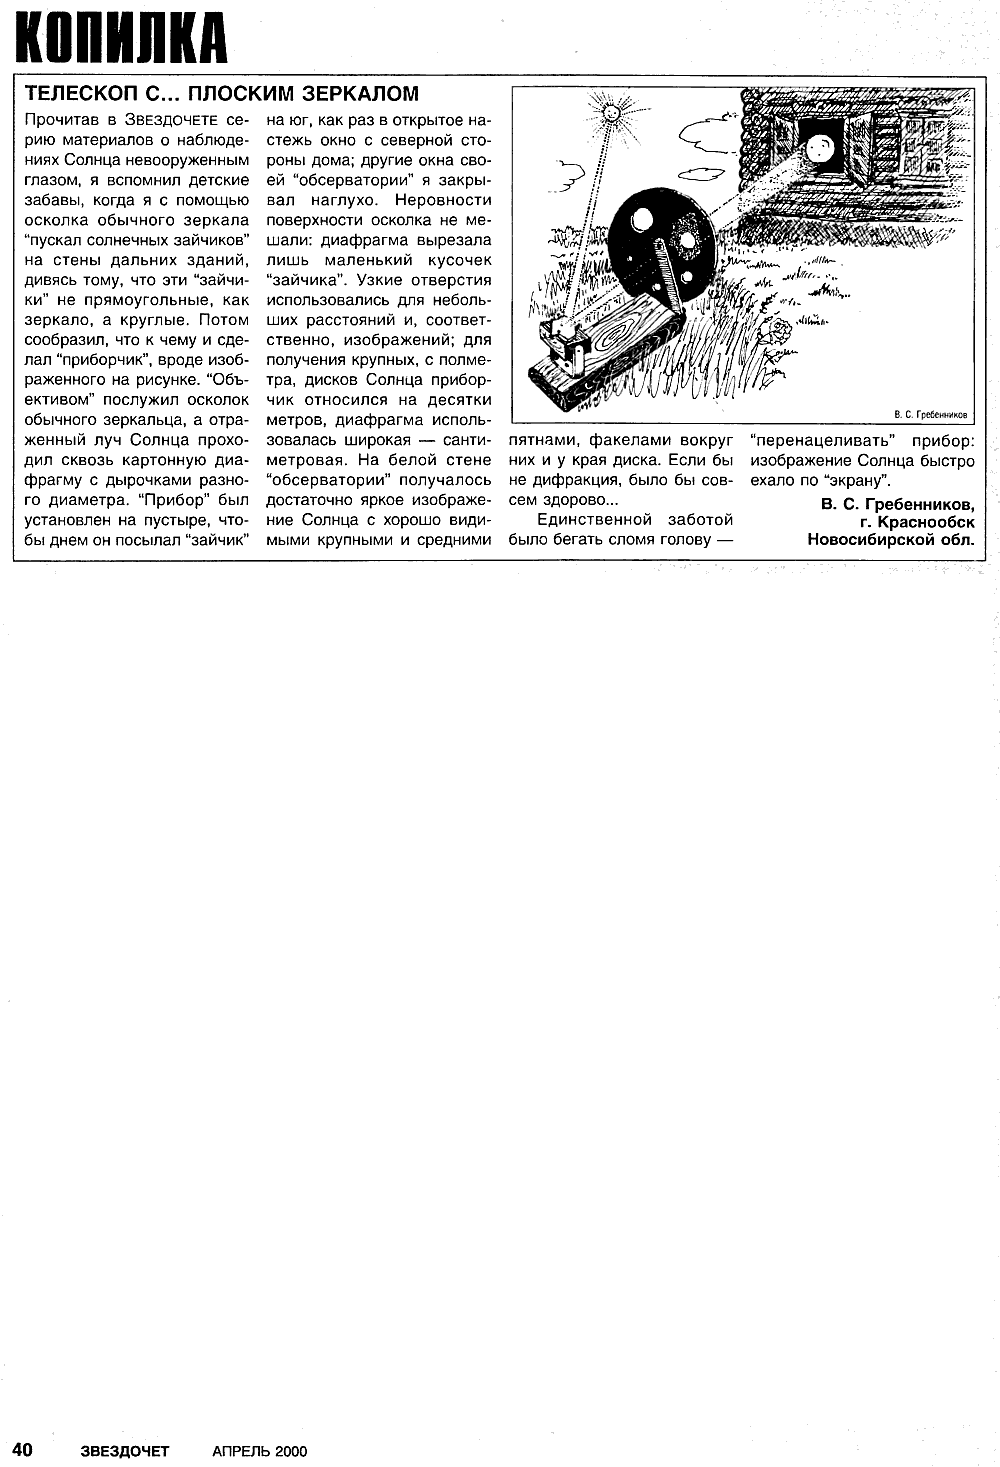 Телескоп с… плоским зеркалом. В.С. Гребенников. Звездочет, 2000, №4, с.40